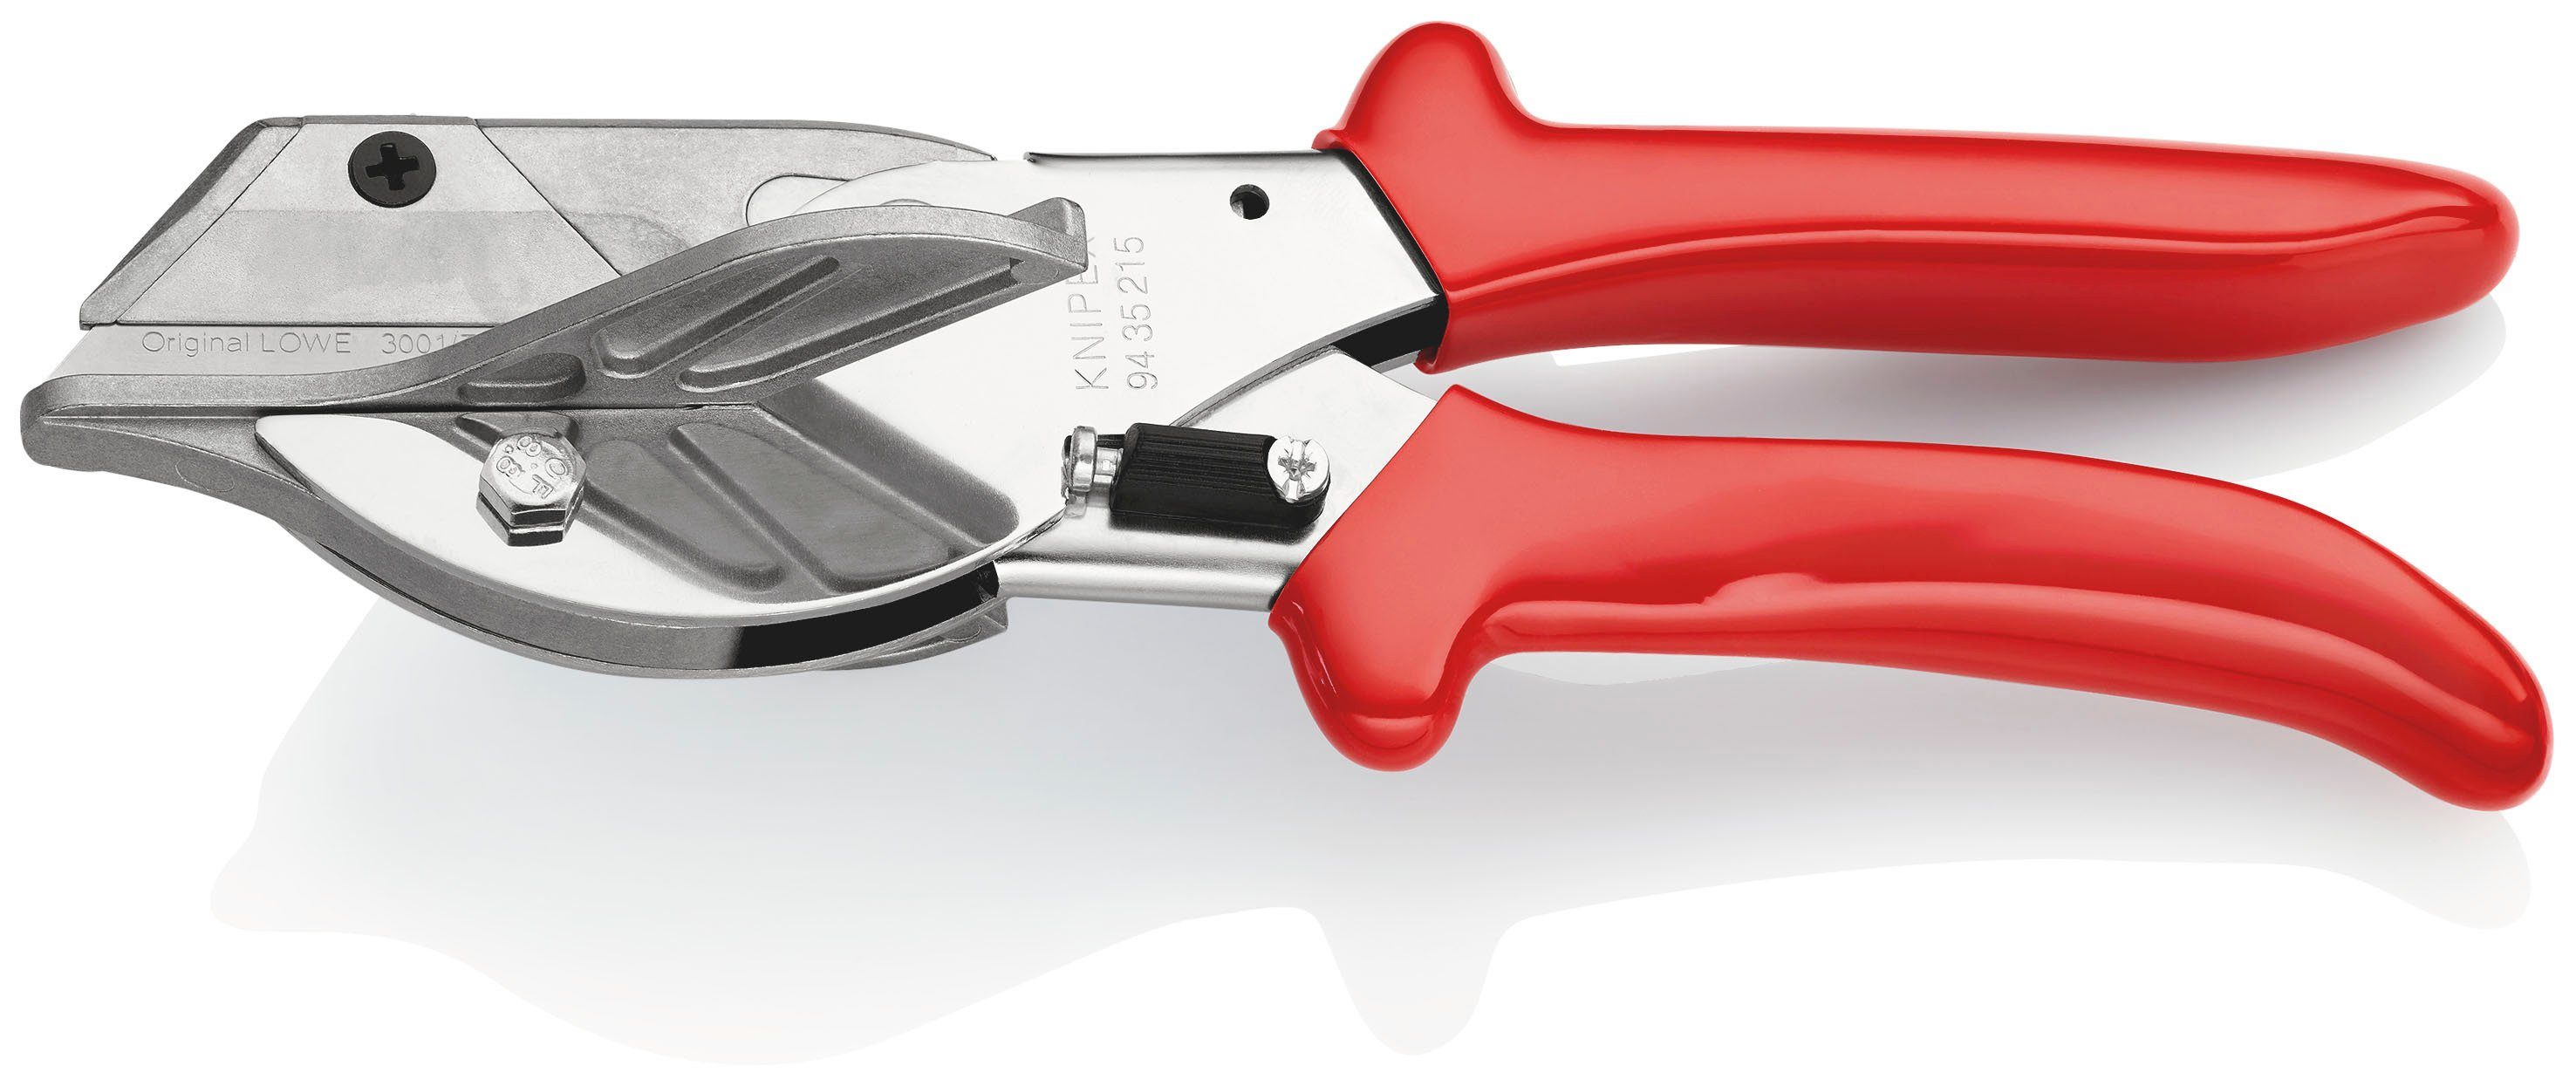 Knipex Elektrikerschere 94 35 215 EAN Gehrungsschere für Kunststoff- und Gummiprofile, verchromt, mit Kunststoff-Hüllen 215 mm | Schneidwerkzeuge